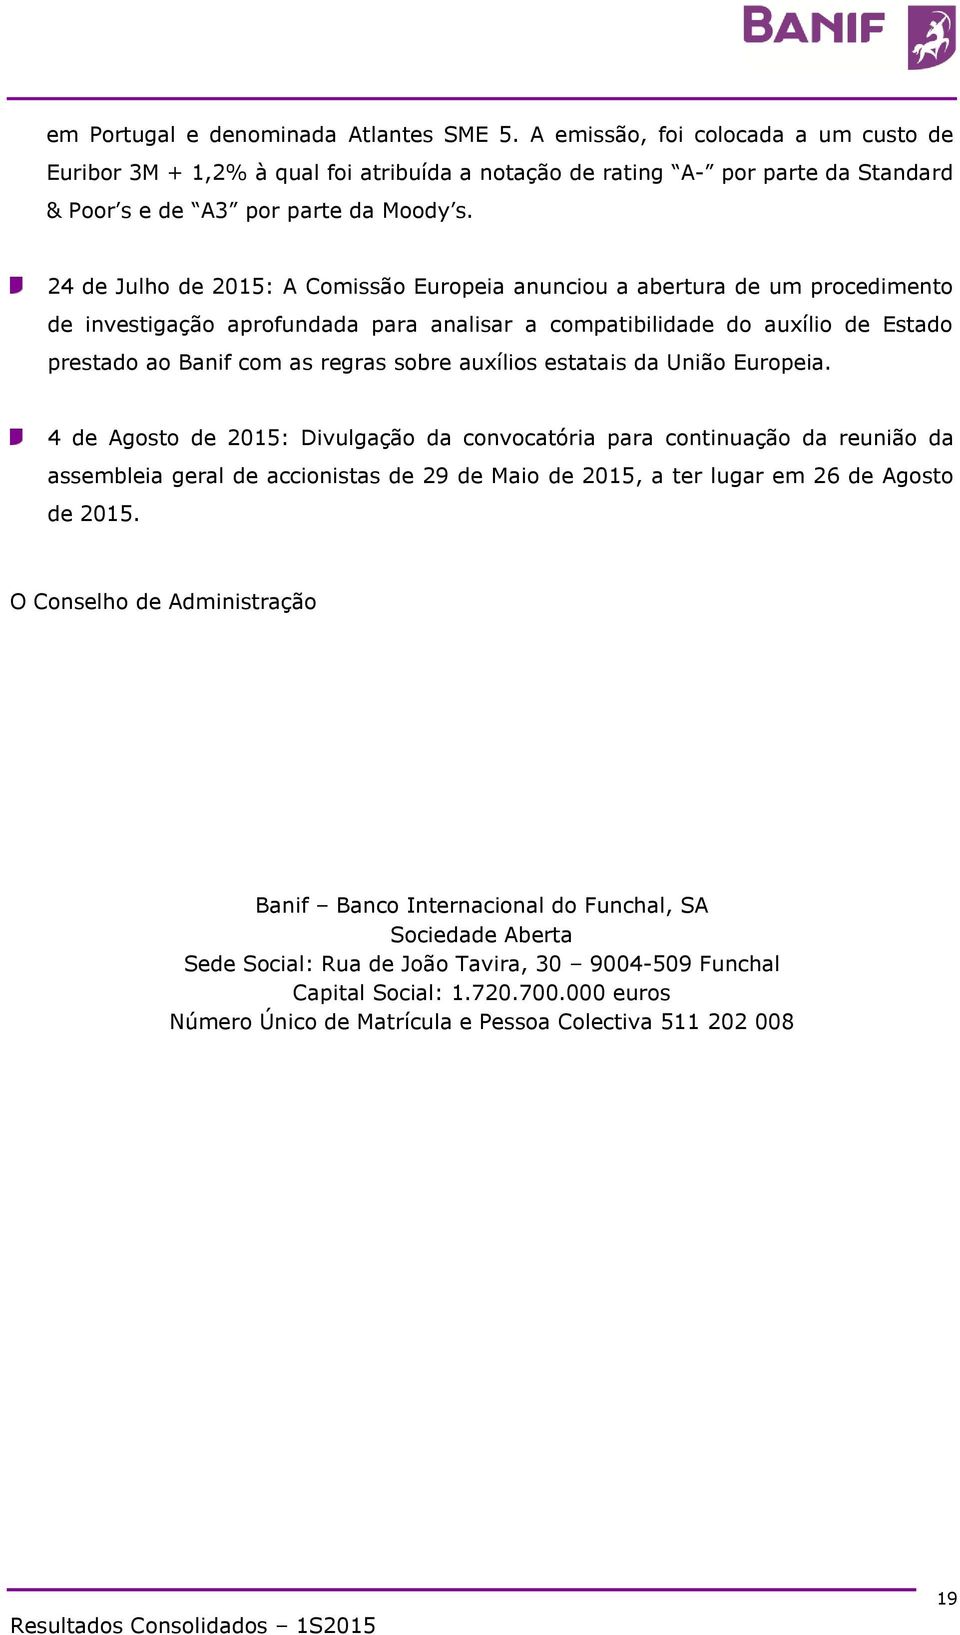 24 de Julho de 2015: A Comissão Europeia anunciou a abertura de um procedimento de investigação aprofundada para analisar a compatibilidade do auxílio de Estado prestado ao Banif com as regras sobre